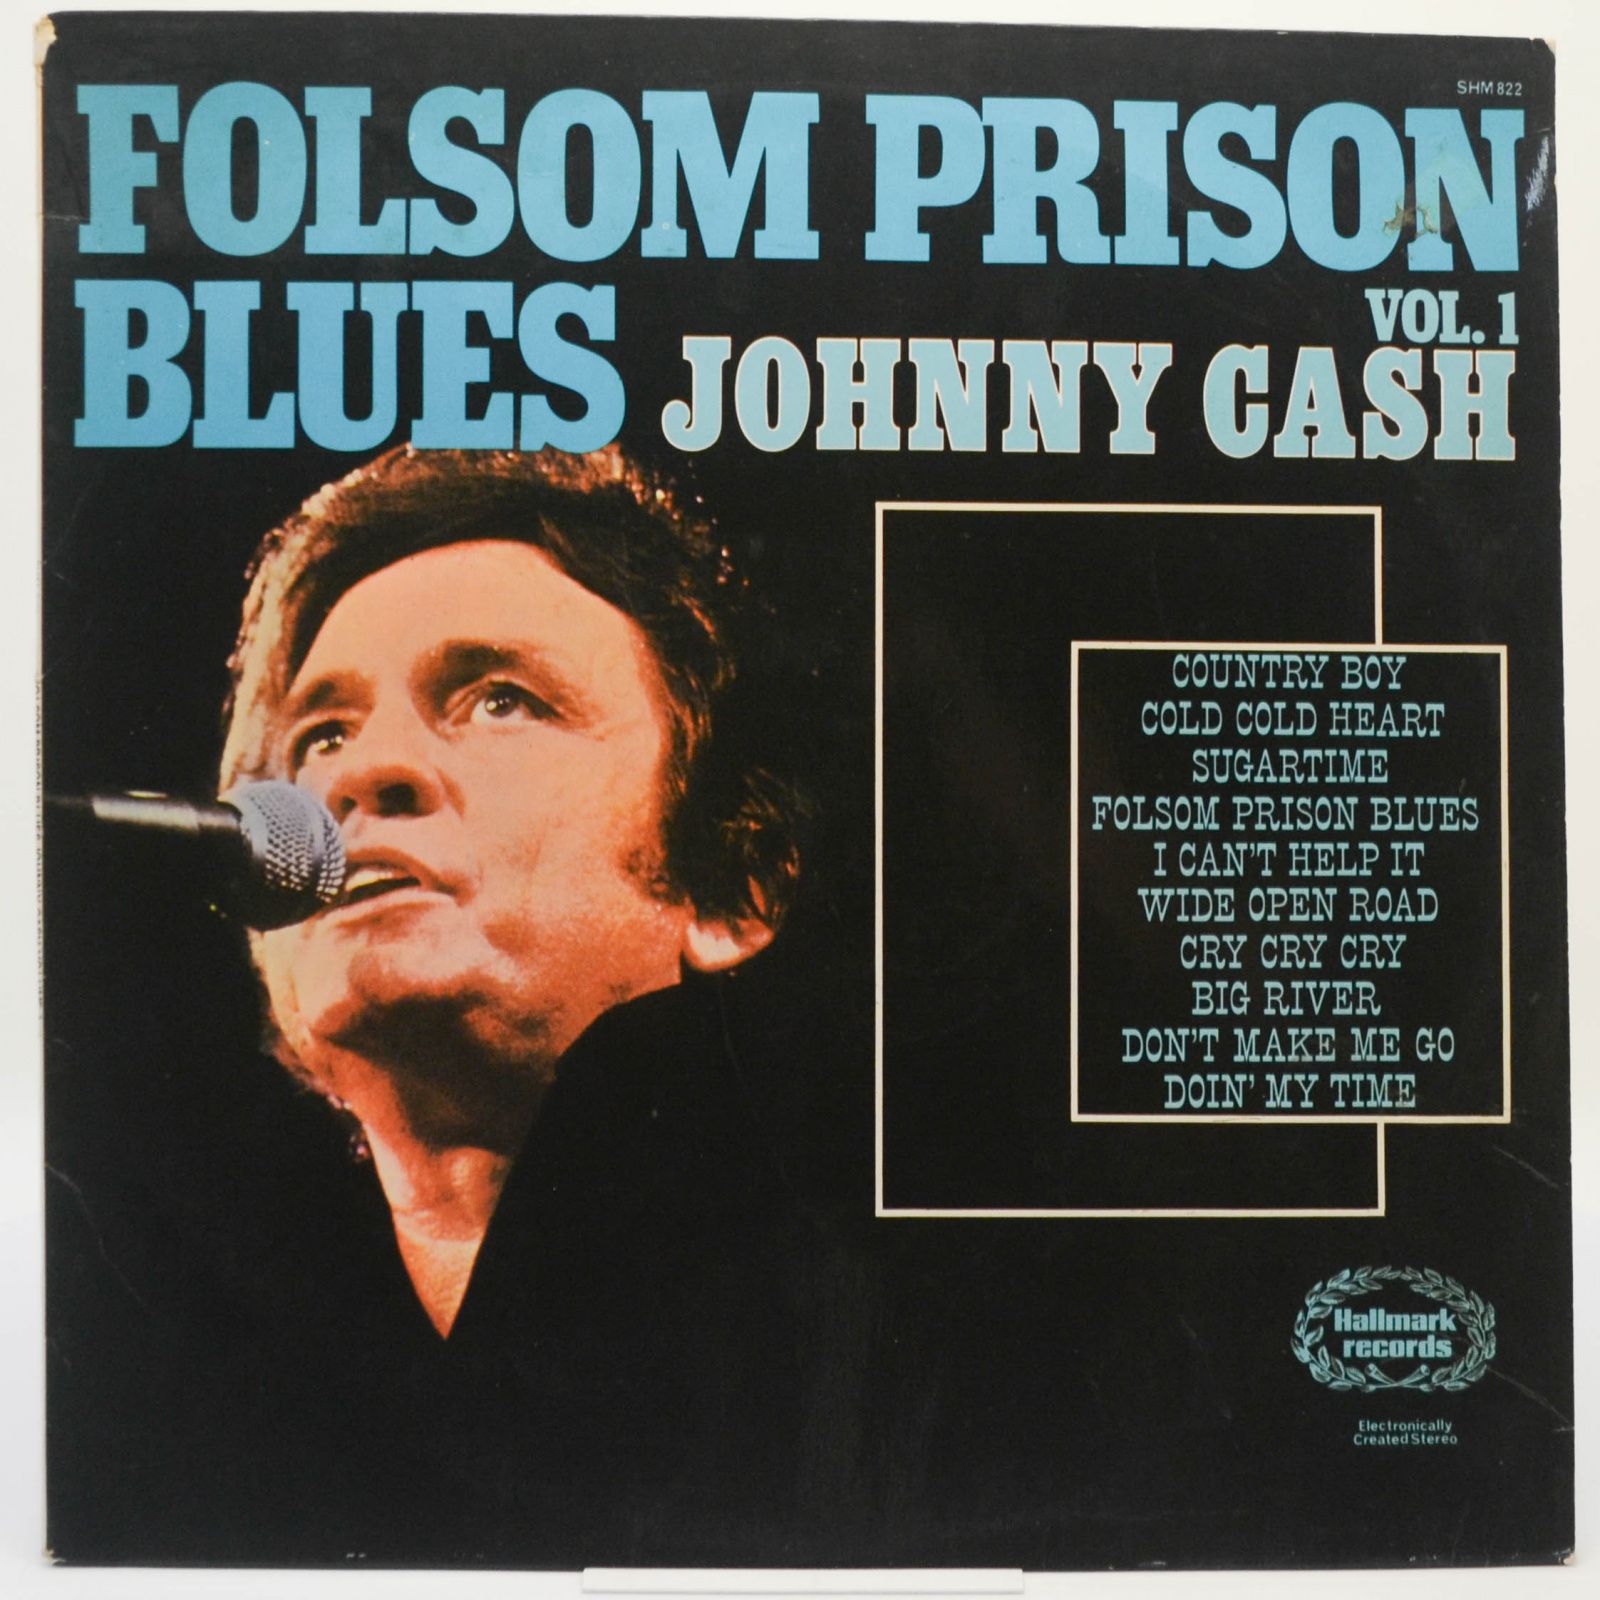 Folsom Prison Blues Vol. 1, 1973